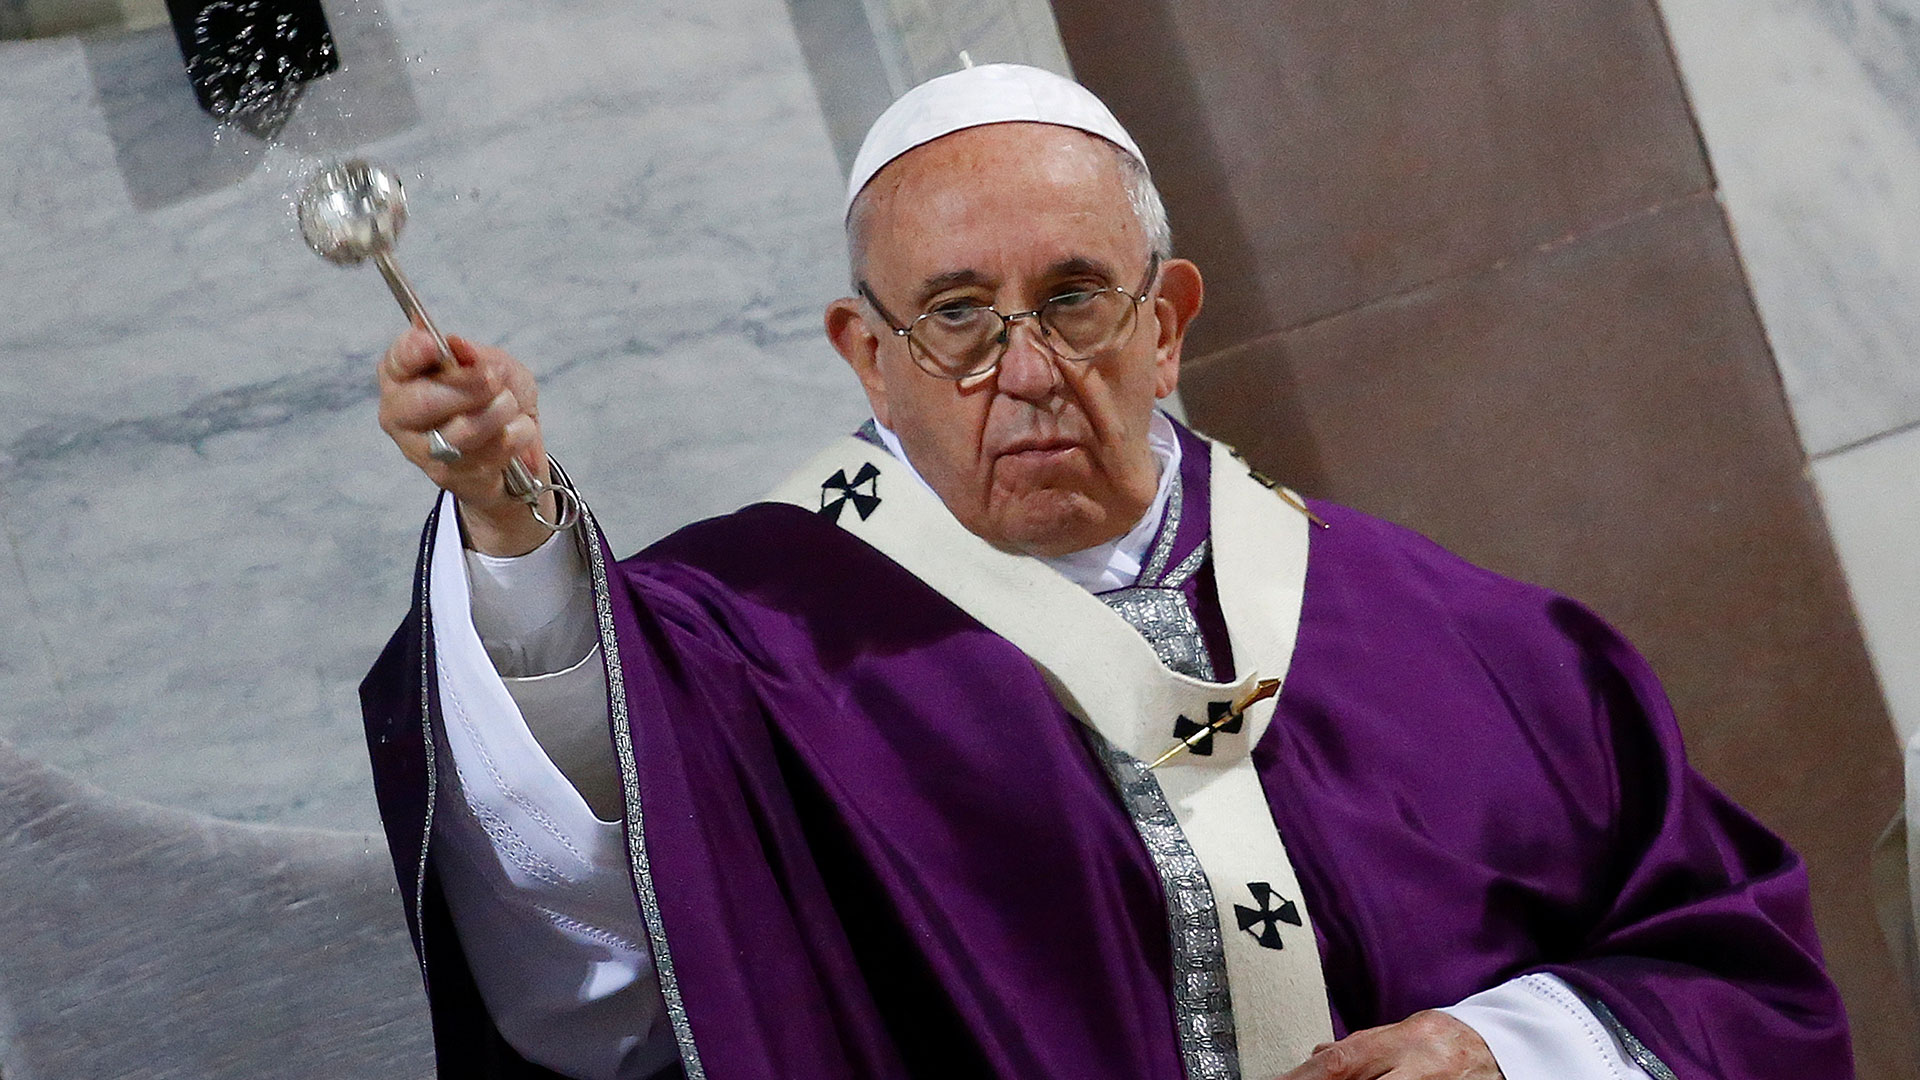 El papa Francisco abre la puerta a ordenar curas casados